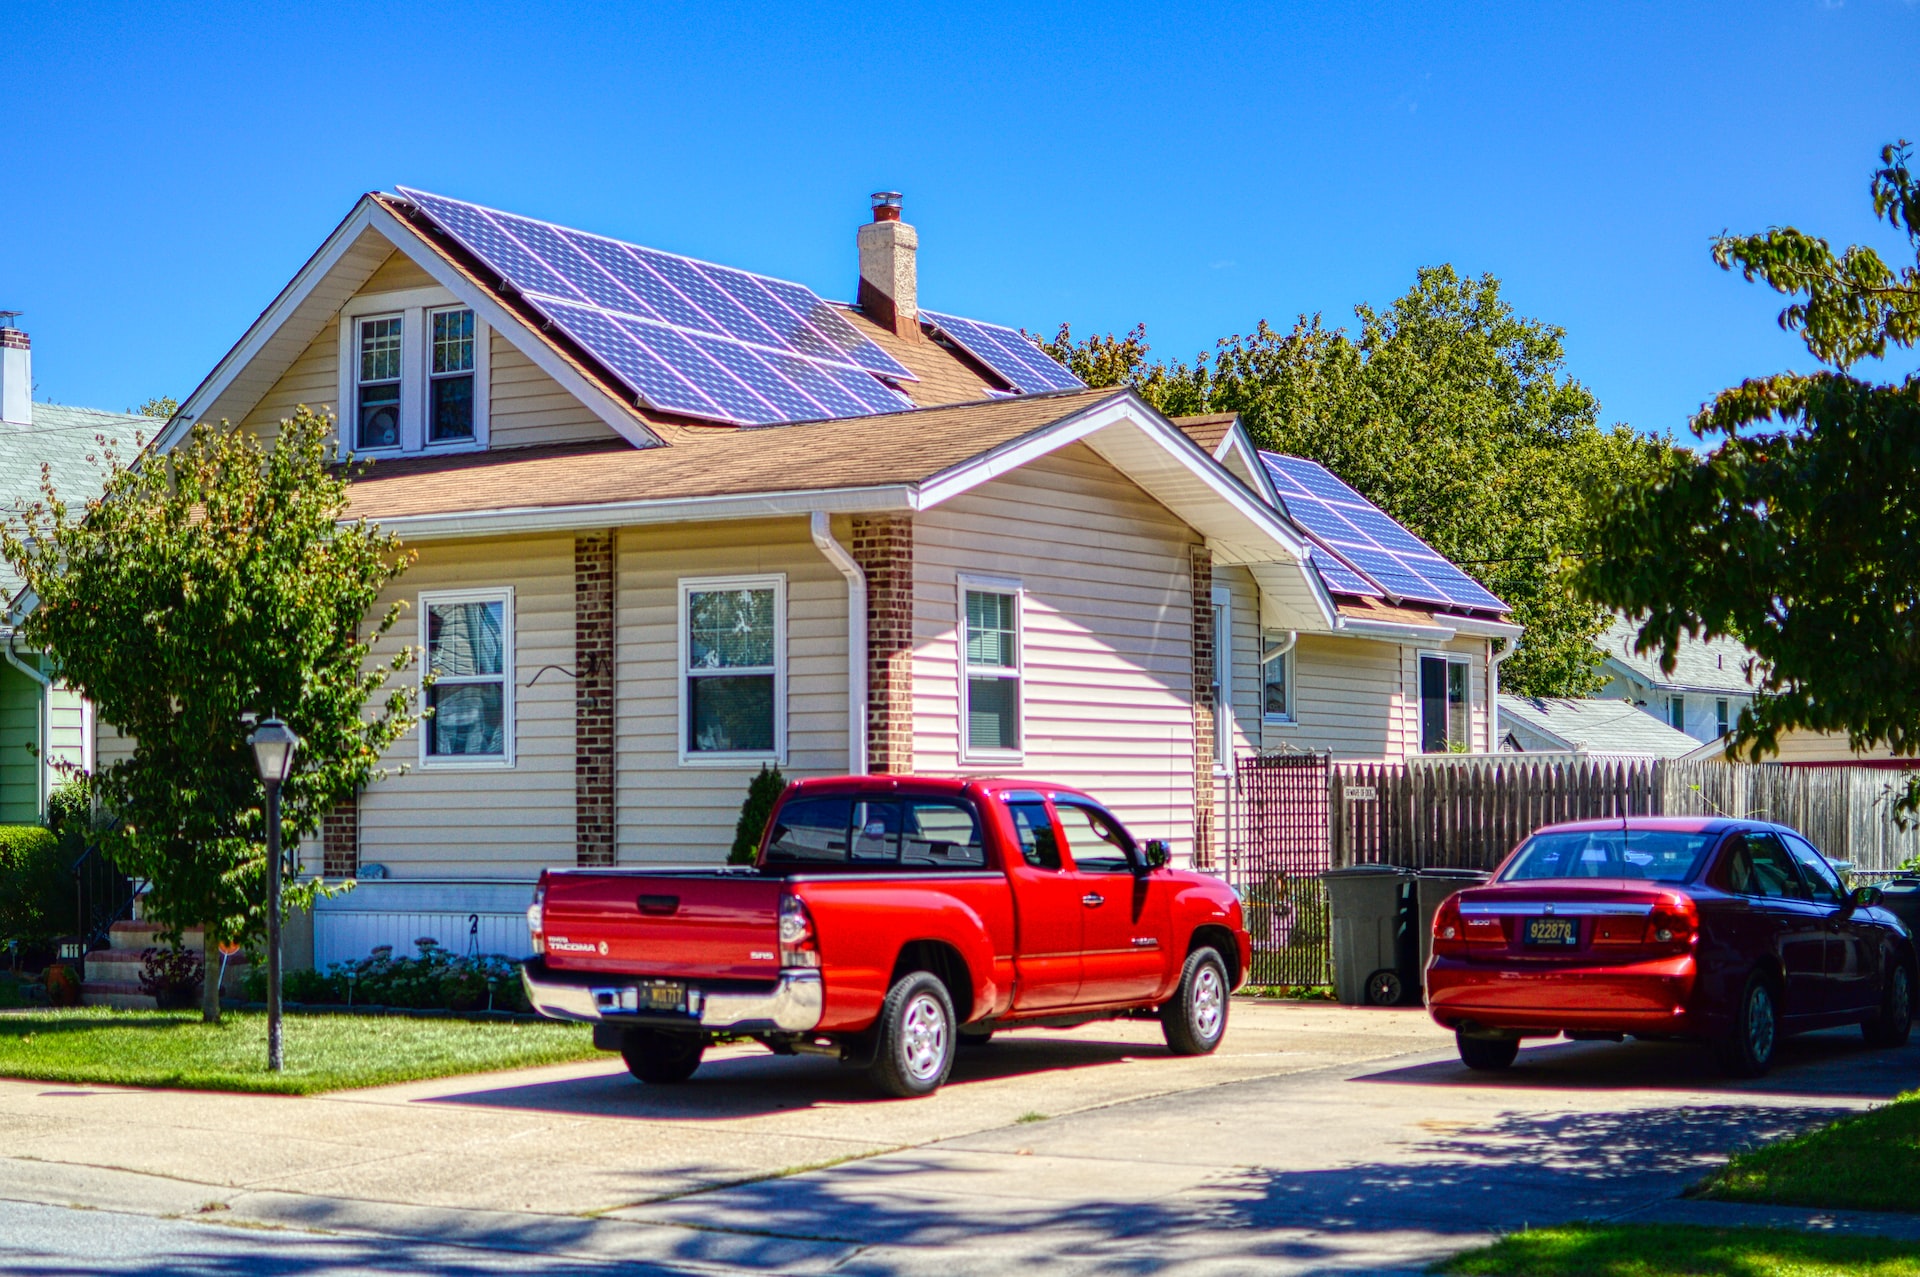 Einfamilienhaus mit Sonnenkollektoren und roten Autos vor dem Haus